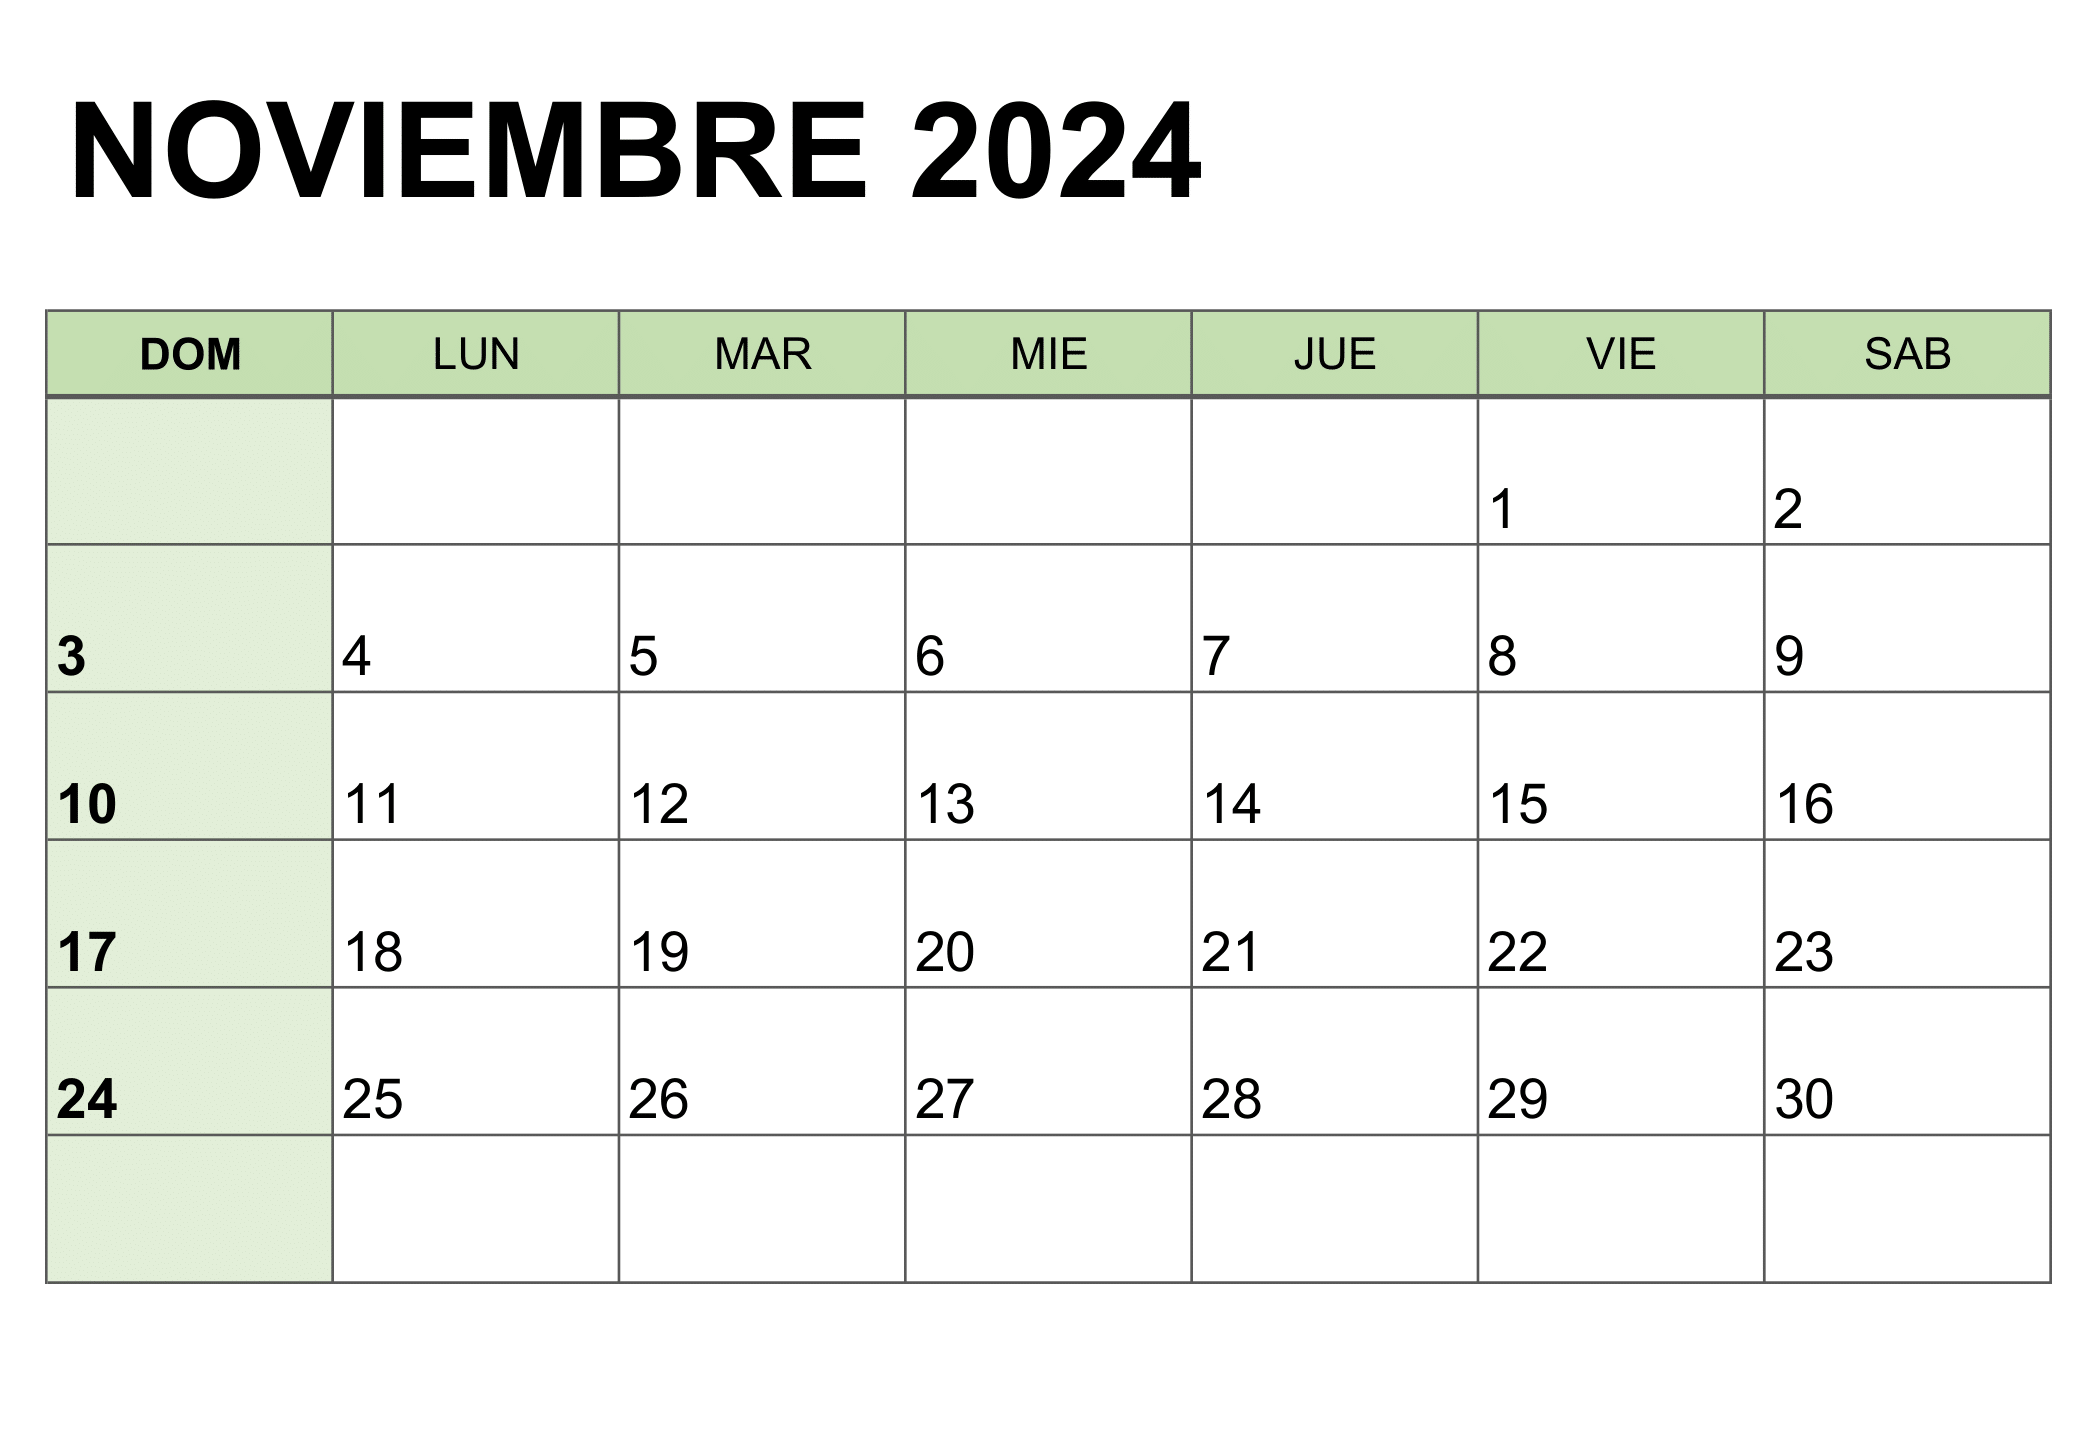 Ilustración del calendario para el mes de noviembre de 2024